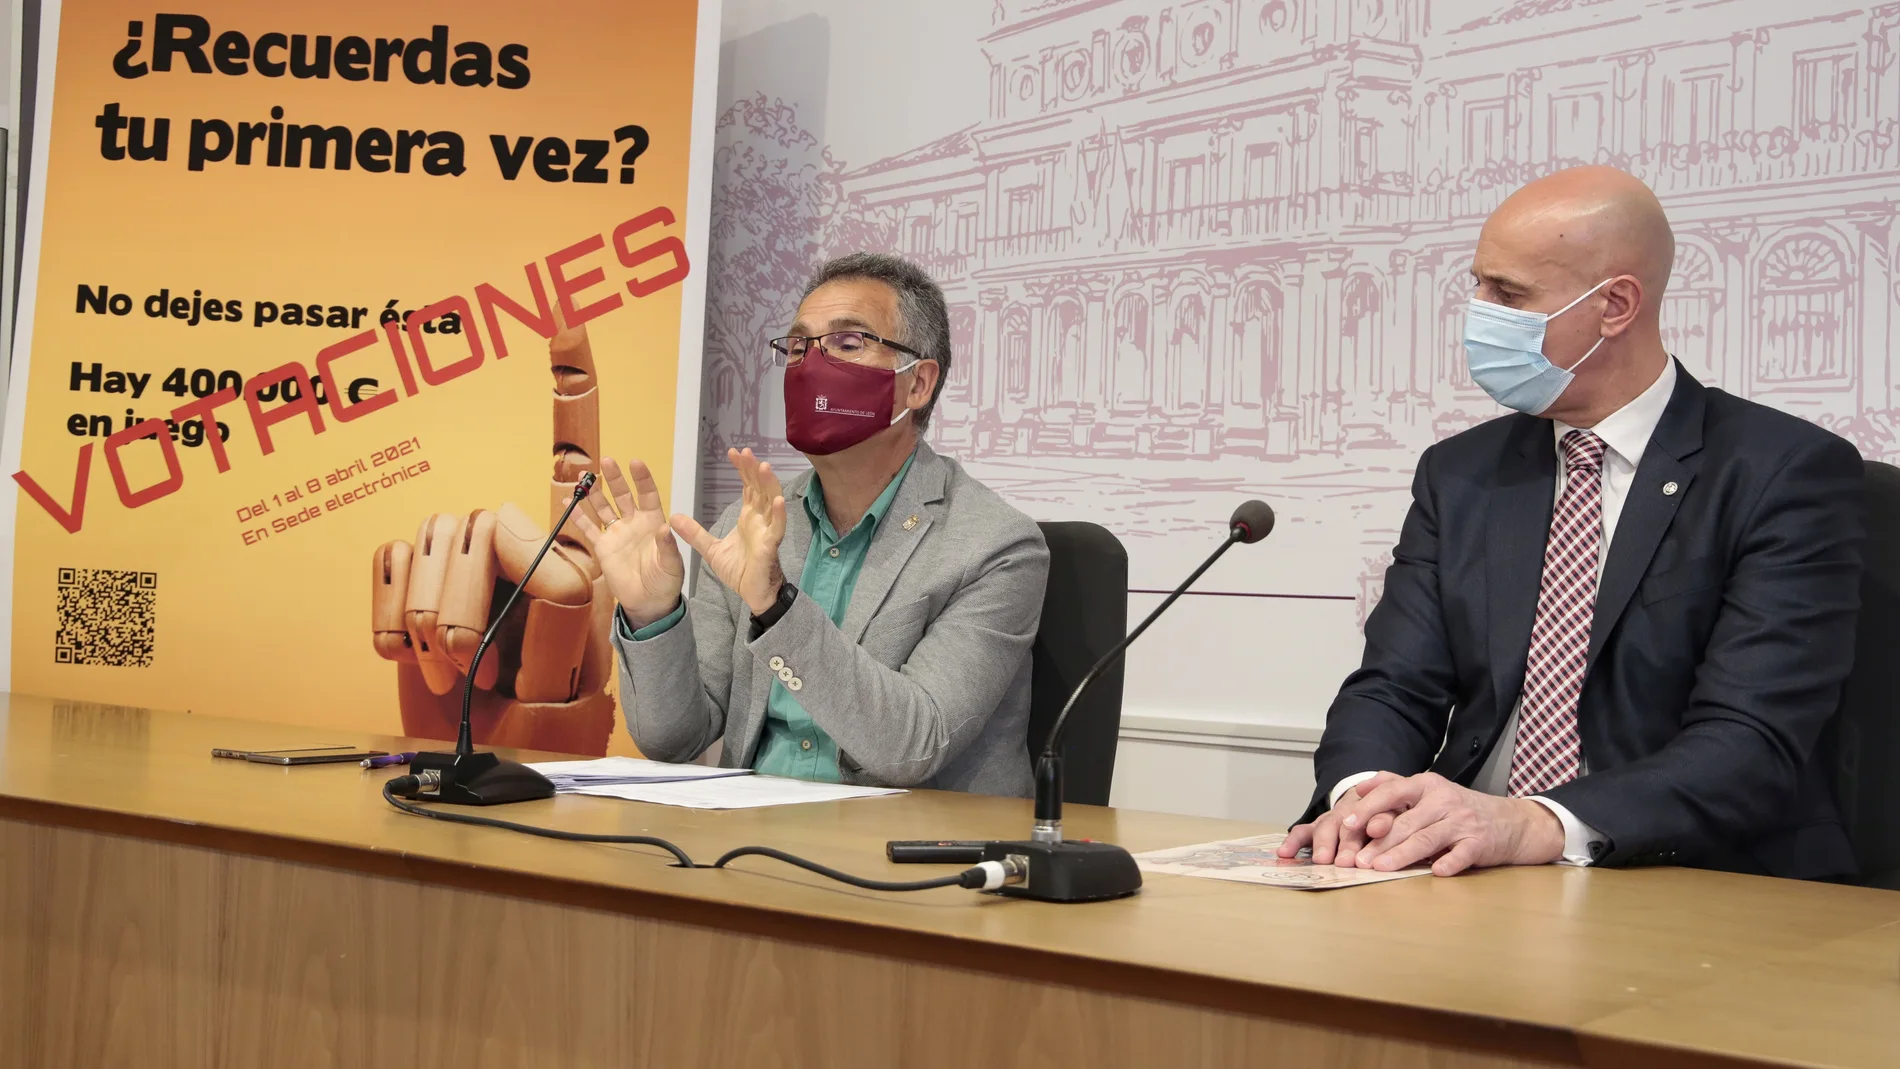 El alcalde de León, José Antonio Diez, y el concejal de Participación Ciudadana, Nicanor Pastrana, detallan en rueda de prensa los presupuestos participativos